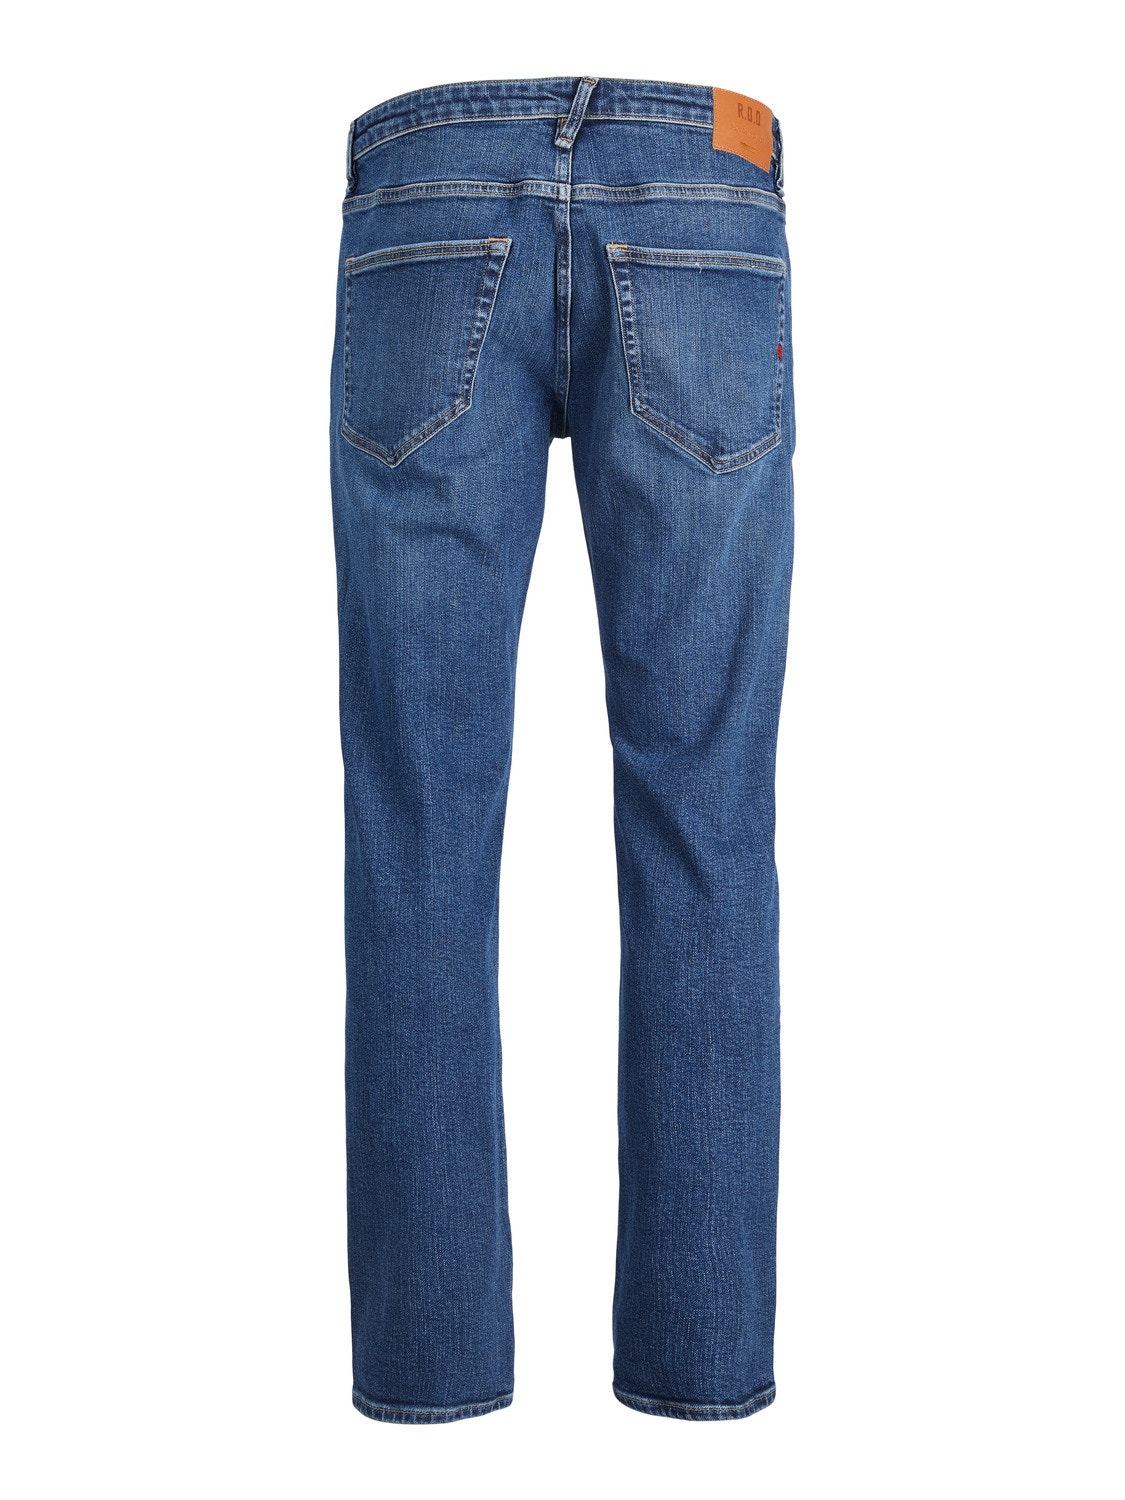 Jack & Jones RDD Royal RE 811 Comfort Fit Jeans -Blue Denim - 12218438